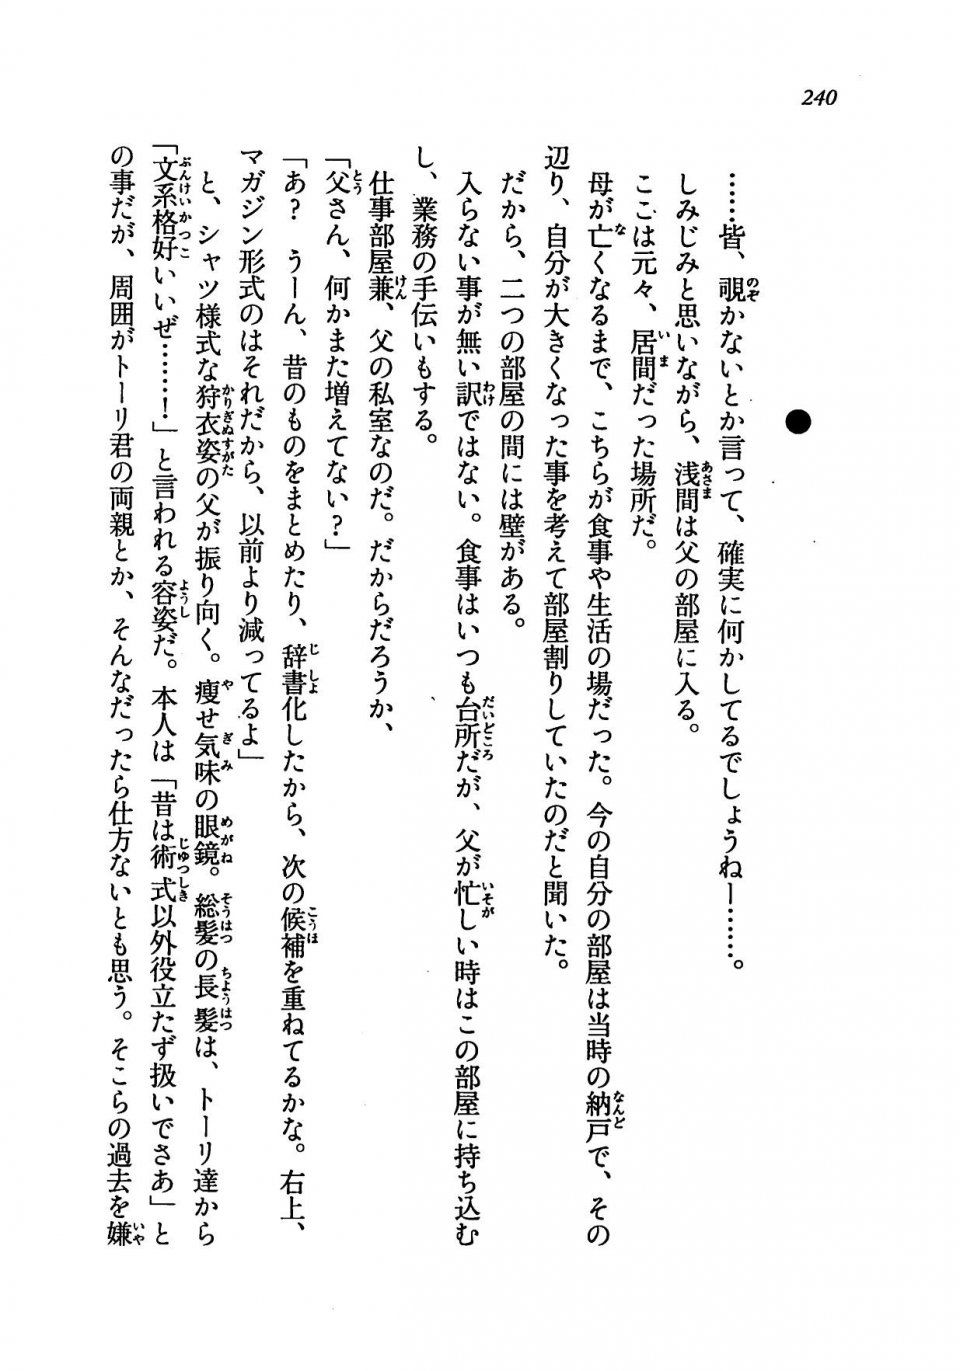 Kyoukai Senjou no Horizon LN Vol 19(8A) - Photo #240